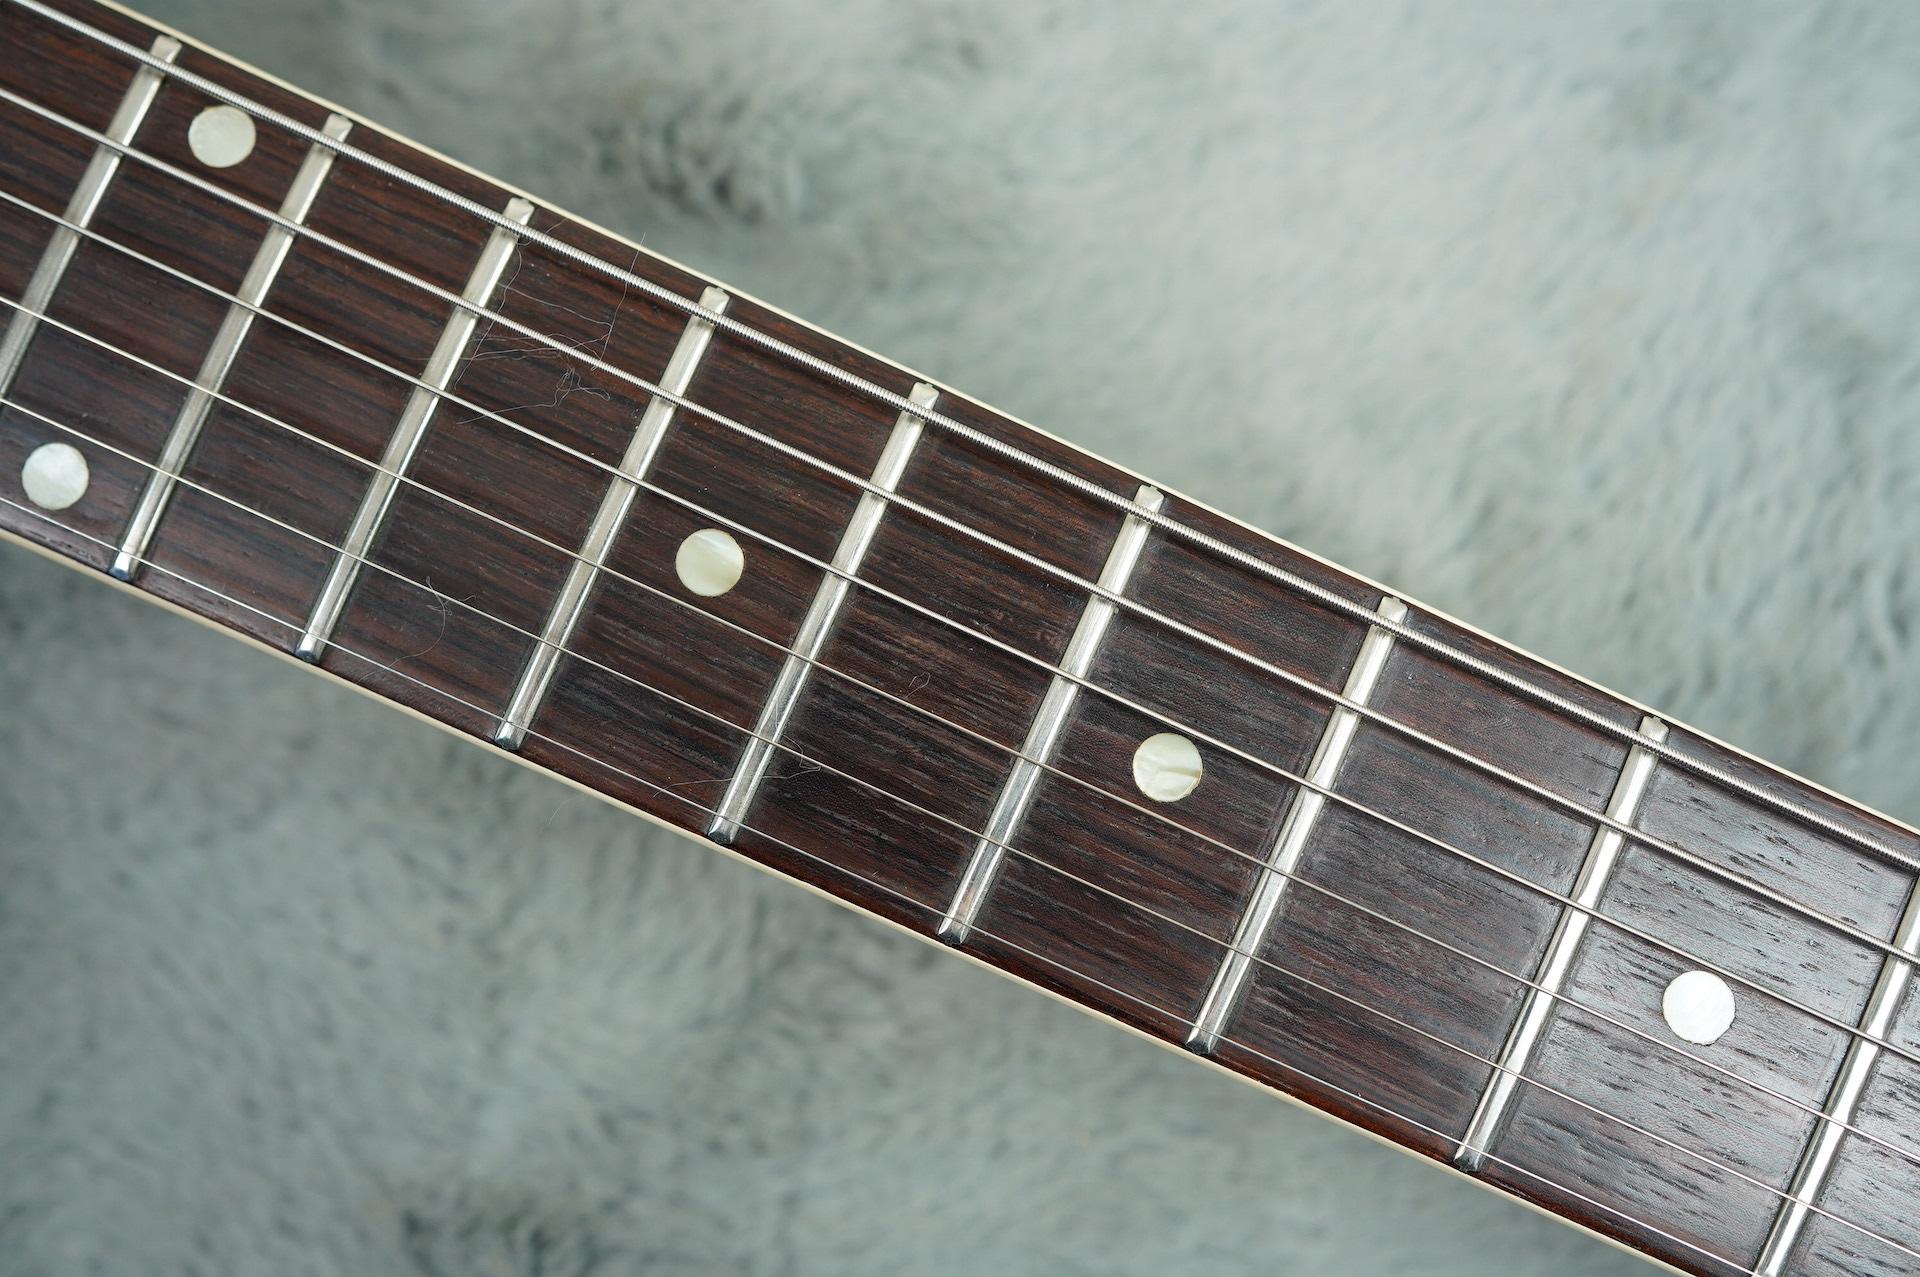 1961 Gibson ES-330 T